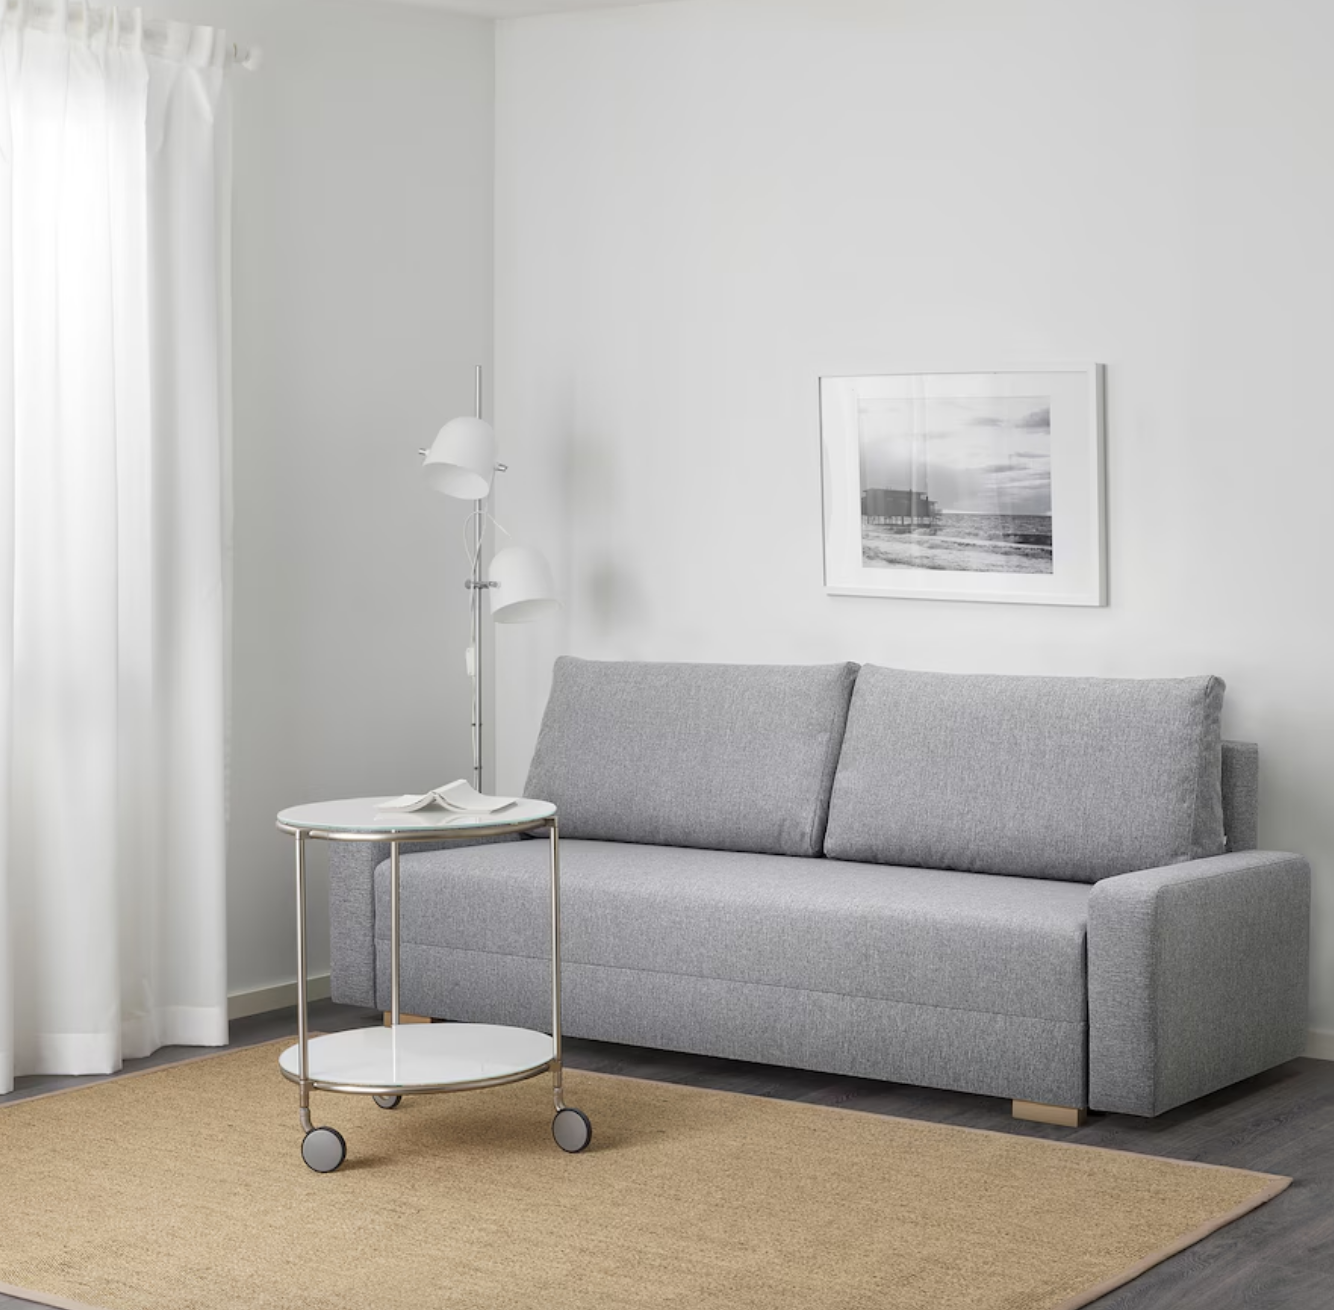 El sofá de IKEA cumple con todos los requisitos para ser el perfecto para todo hogar.